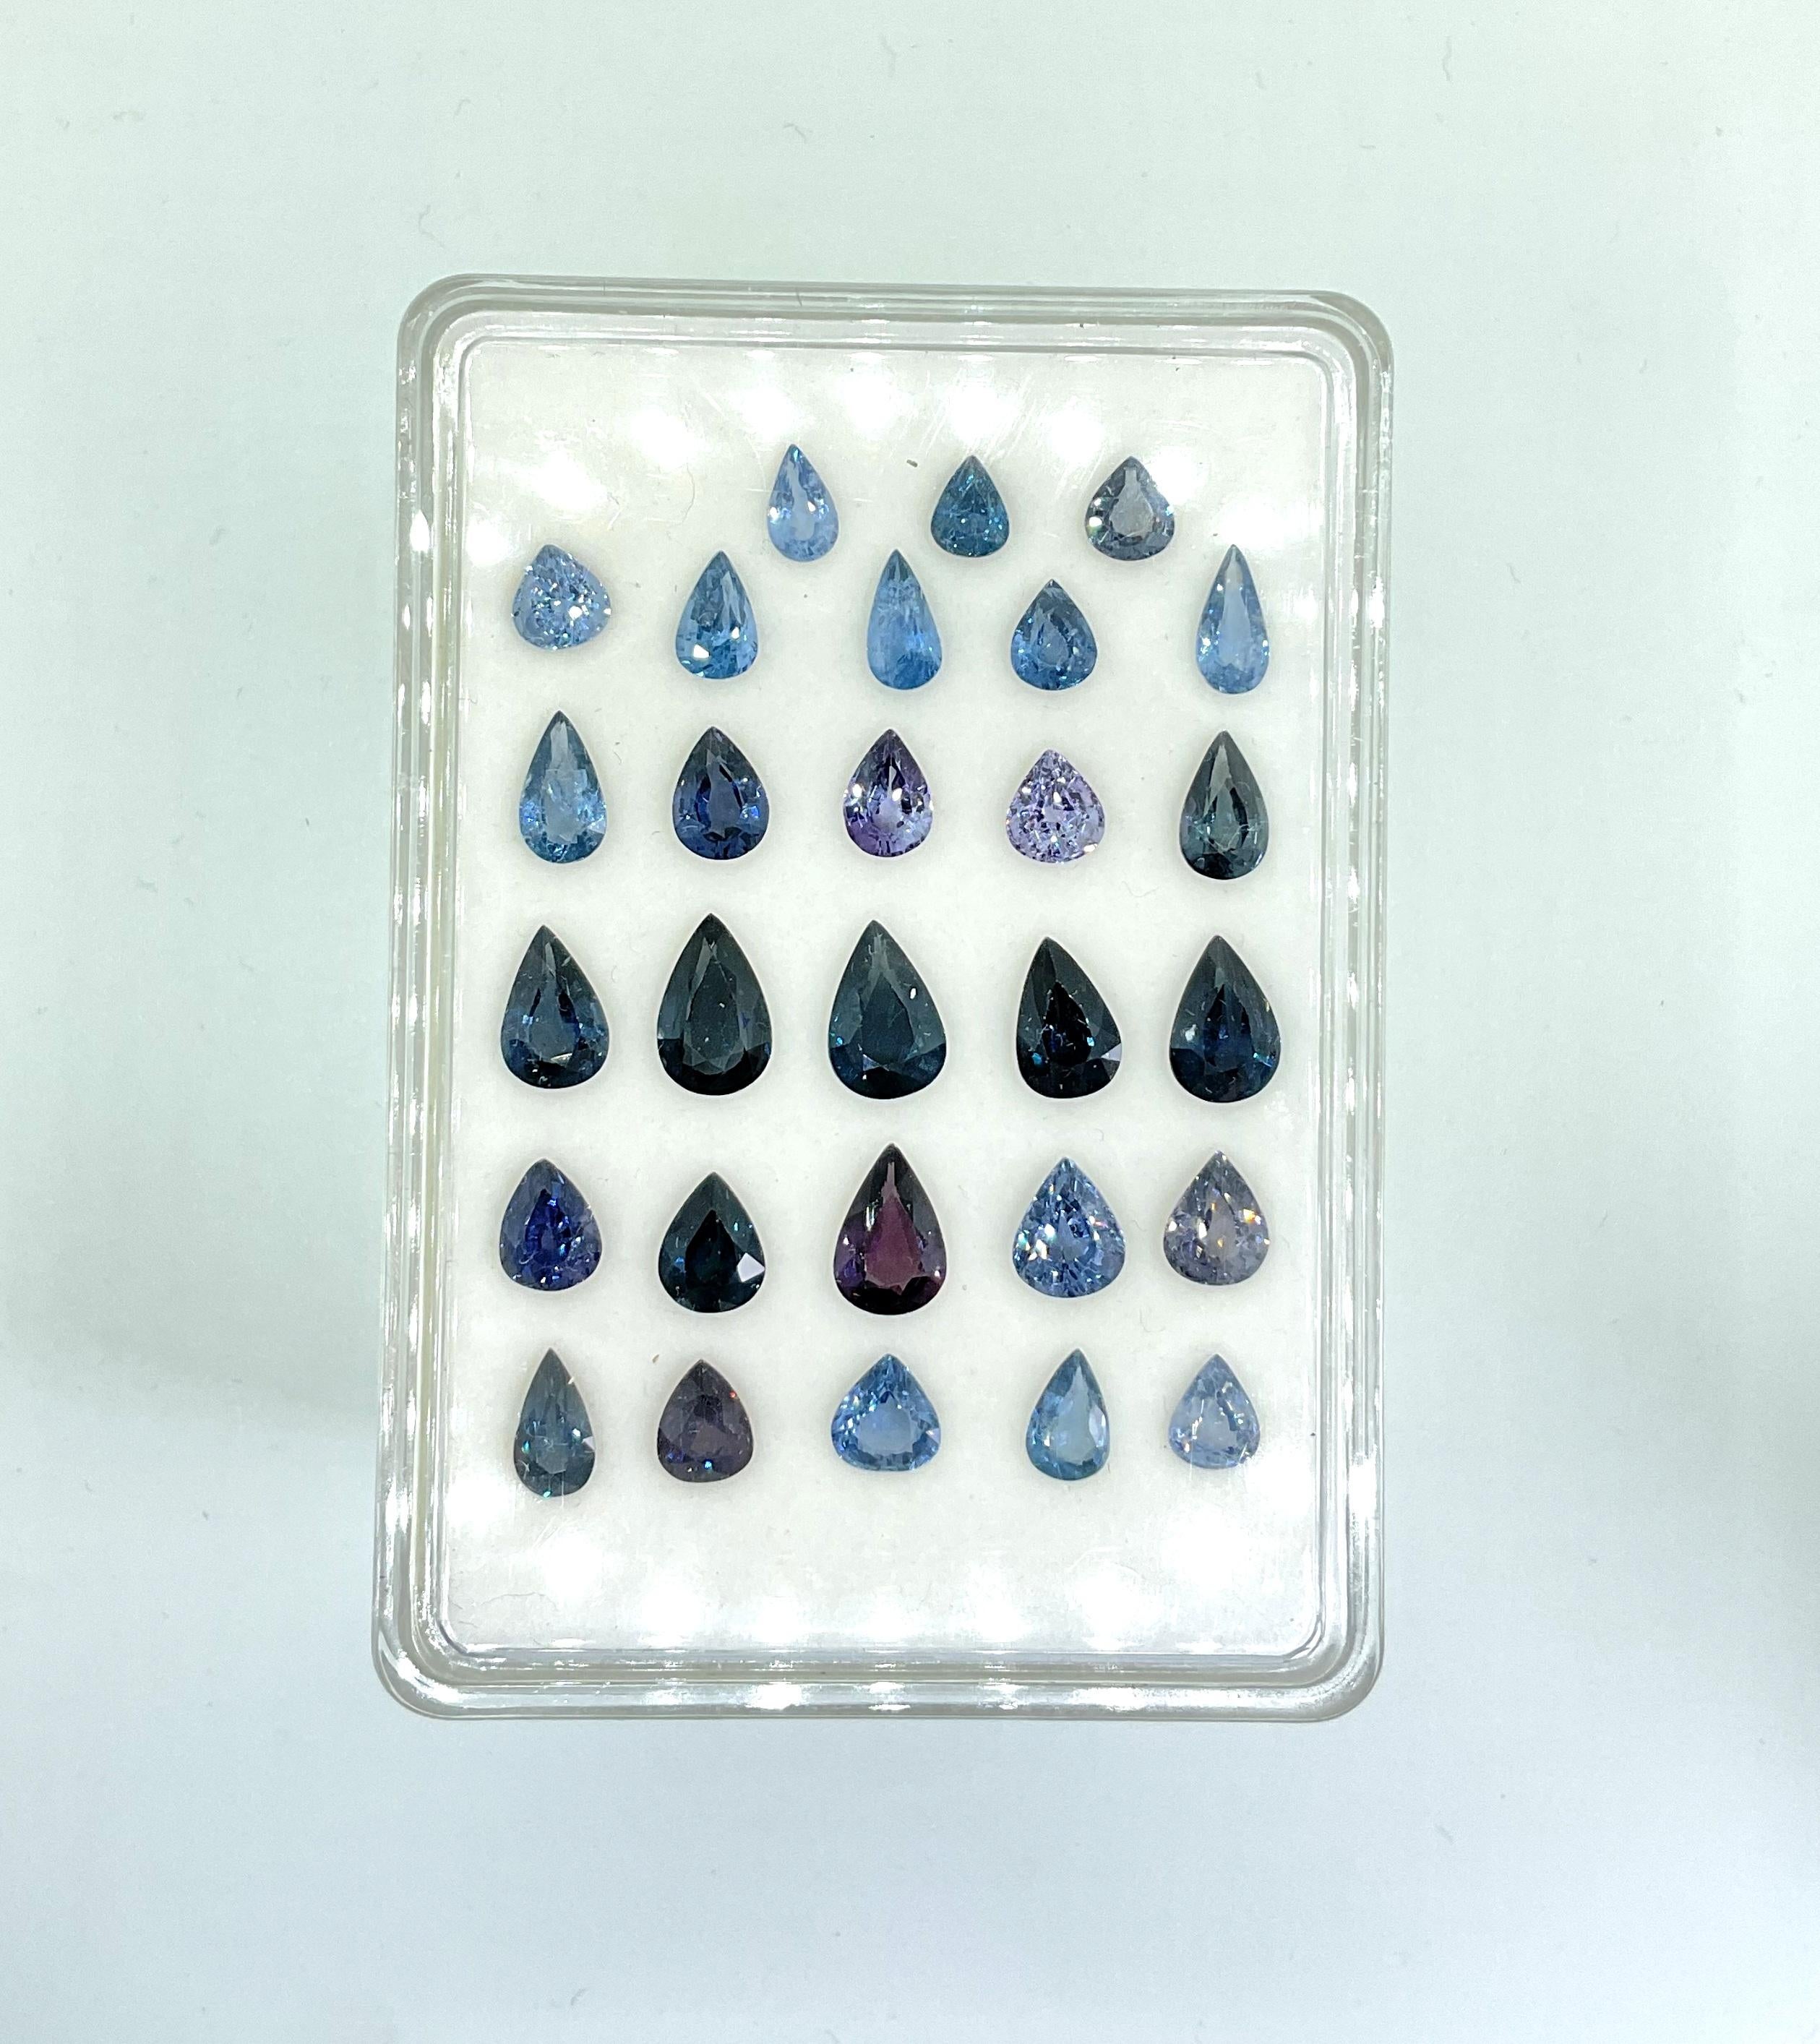 35.12 Carat Blue Spinel Tanzania Faceted Pear Cut stone For Jewelry Natural Gem

Poids - 35,12 carats
Taille - 6x5 à 7x11mm
Forme - Poire
Quantité - 28 pièces